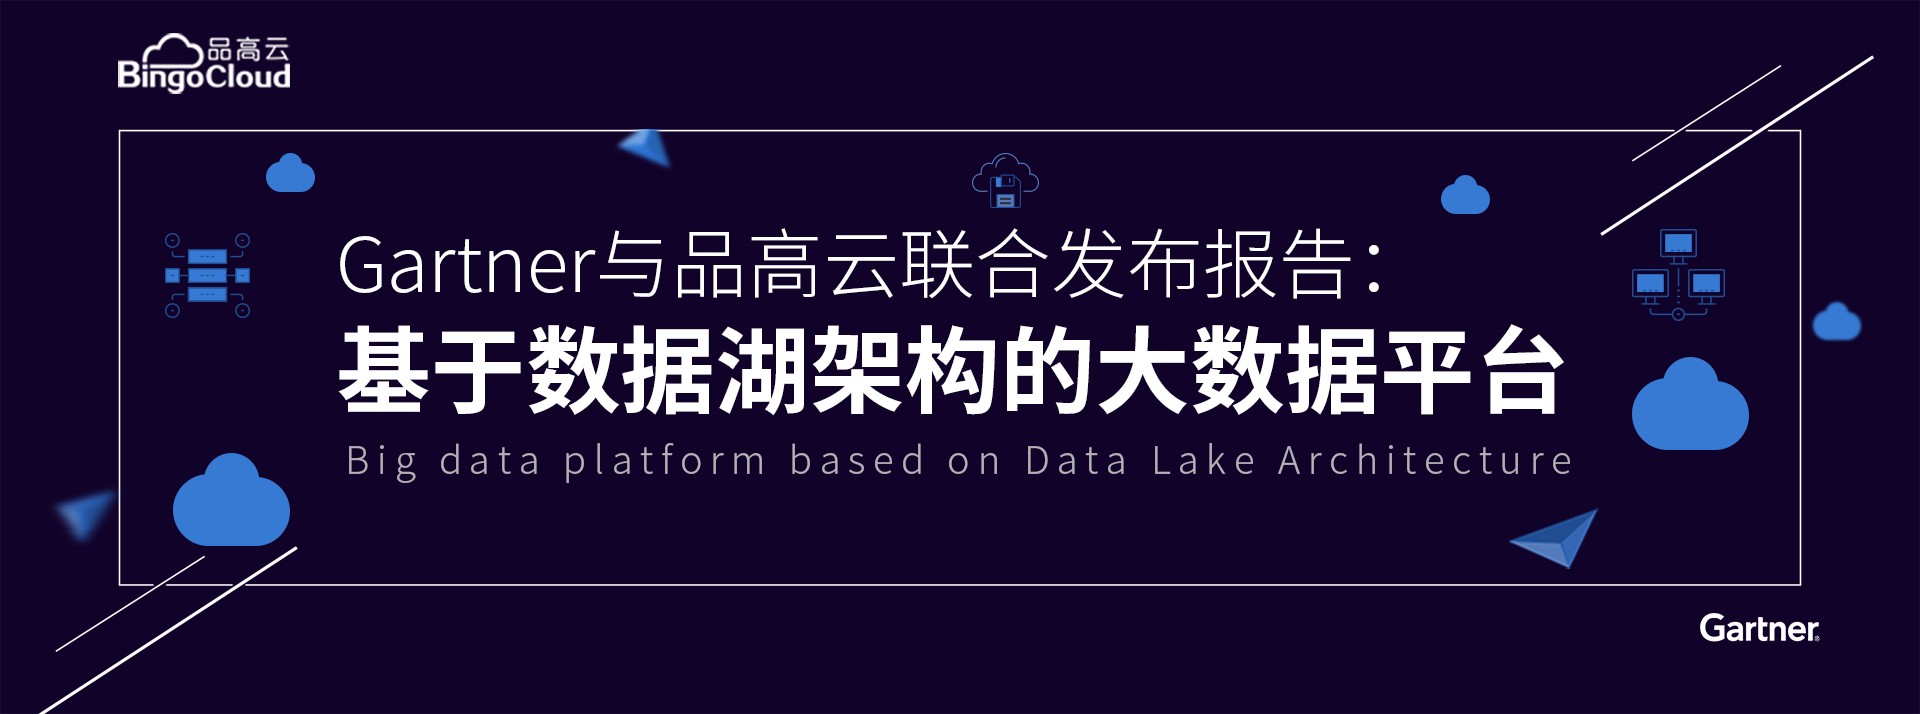 品高云与Gartner联合发布《基于大数据平台的数据湖架构》报告正式上线